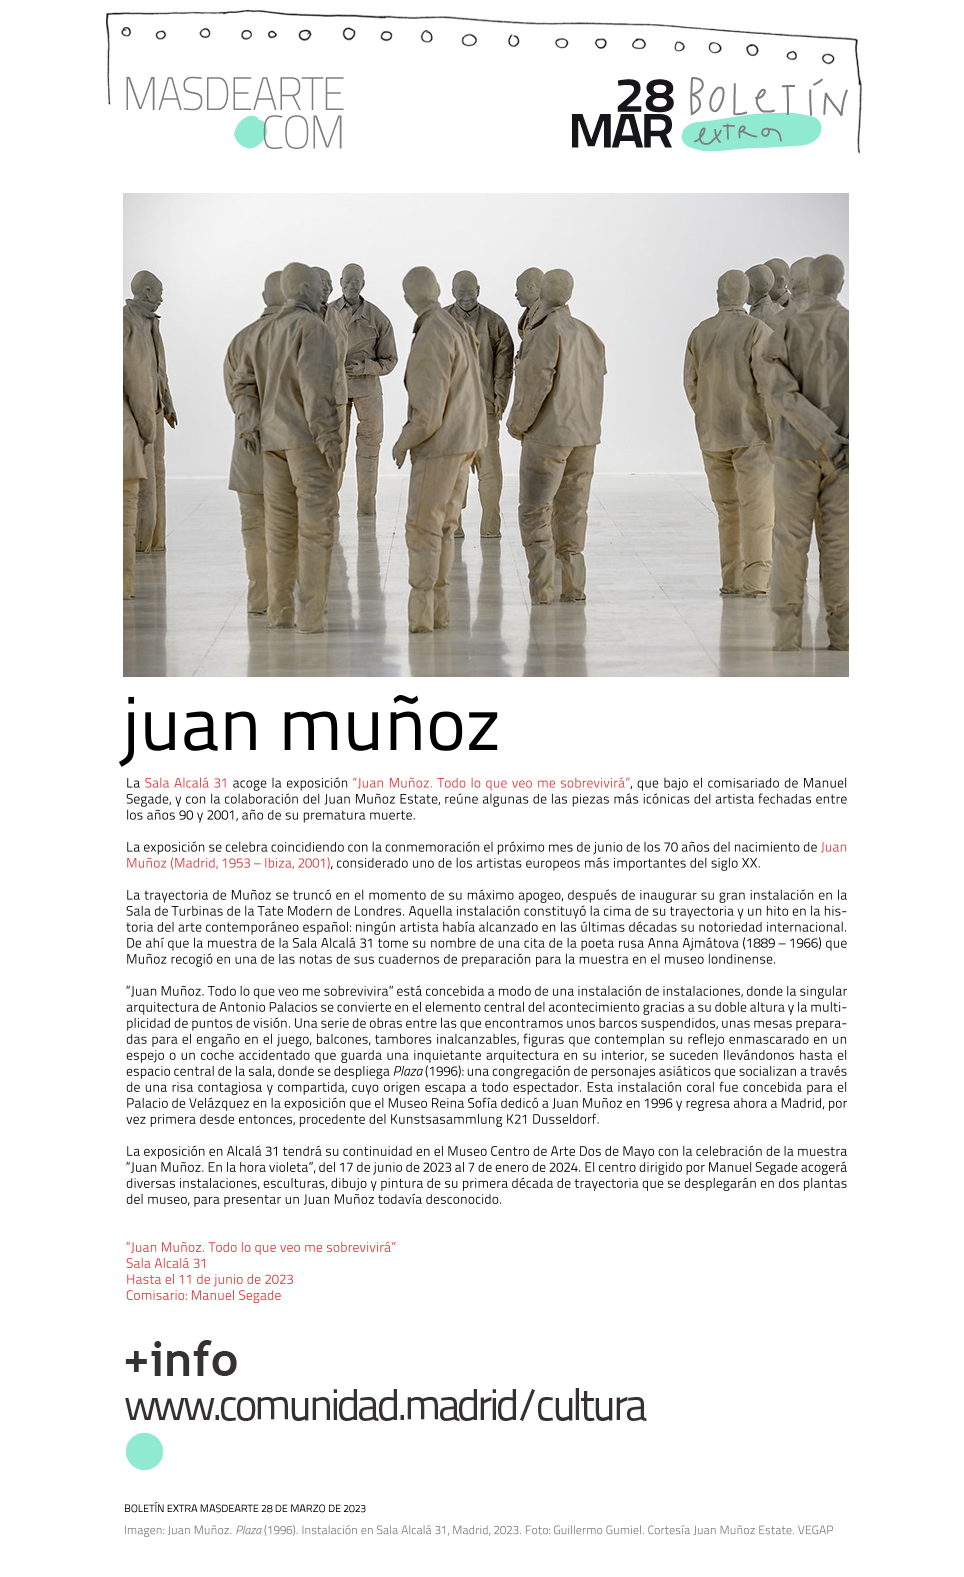 Extra masdearte: Juan Muñoz. Todo lo que veo me sobrevivirá,
 en la Sala Alcalá 31. Hasta el 11 de junio de 2023